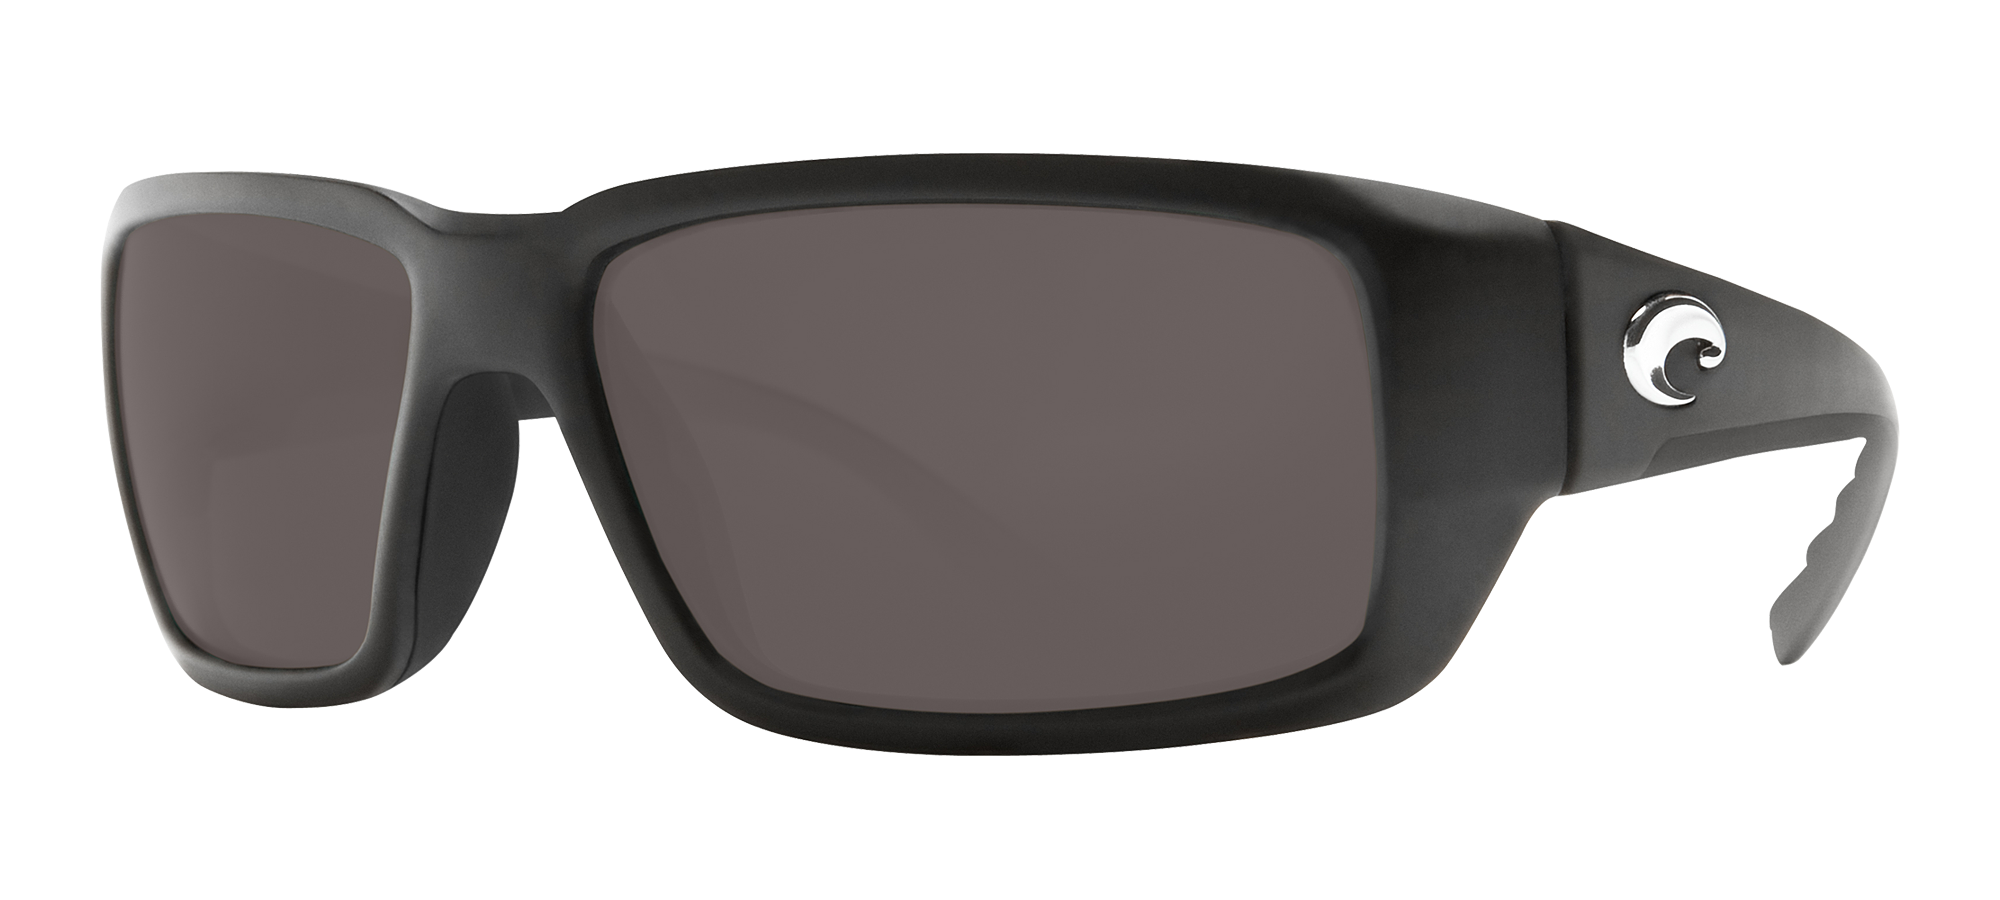 Costa Del Mar Fantail Pro Sunglasses, Matte Black / Blue Mirror